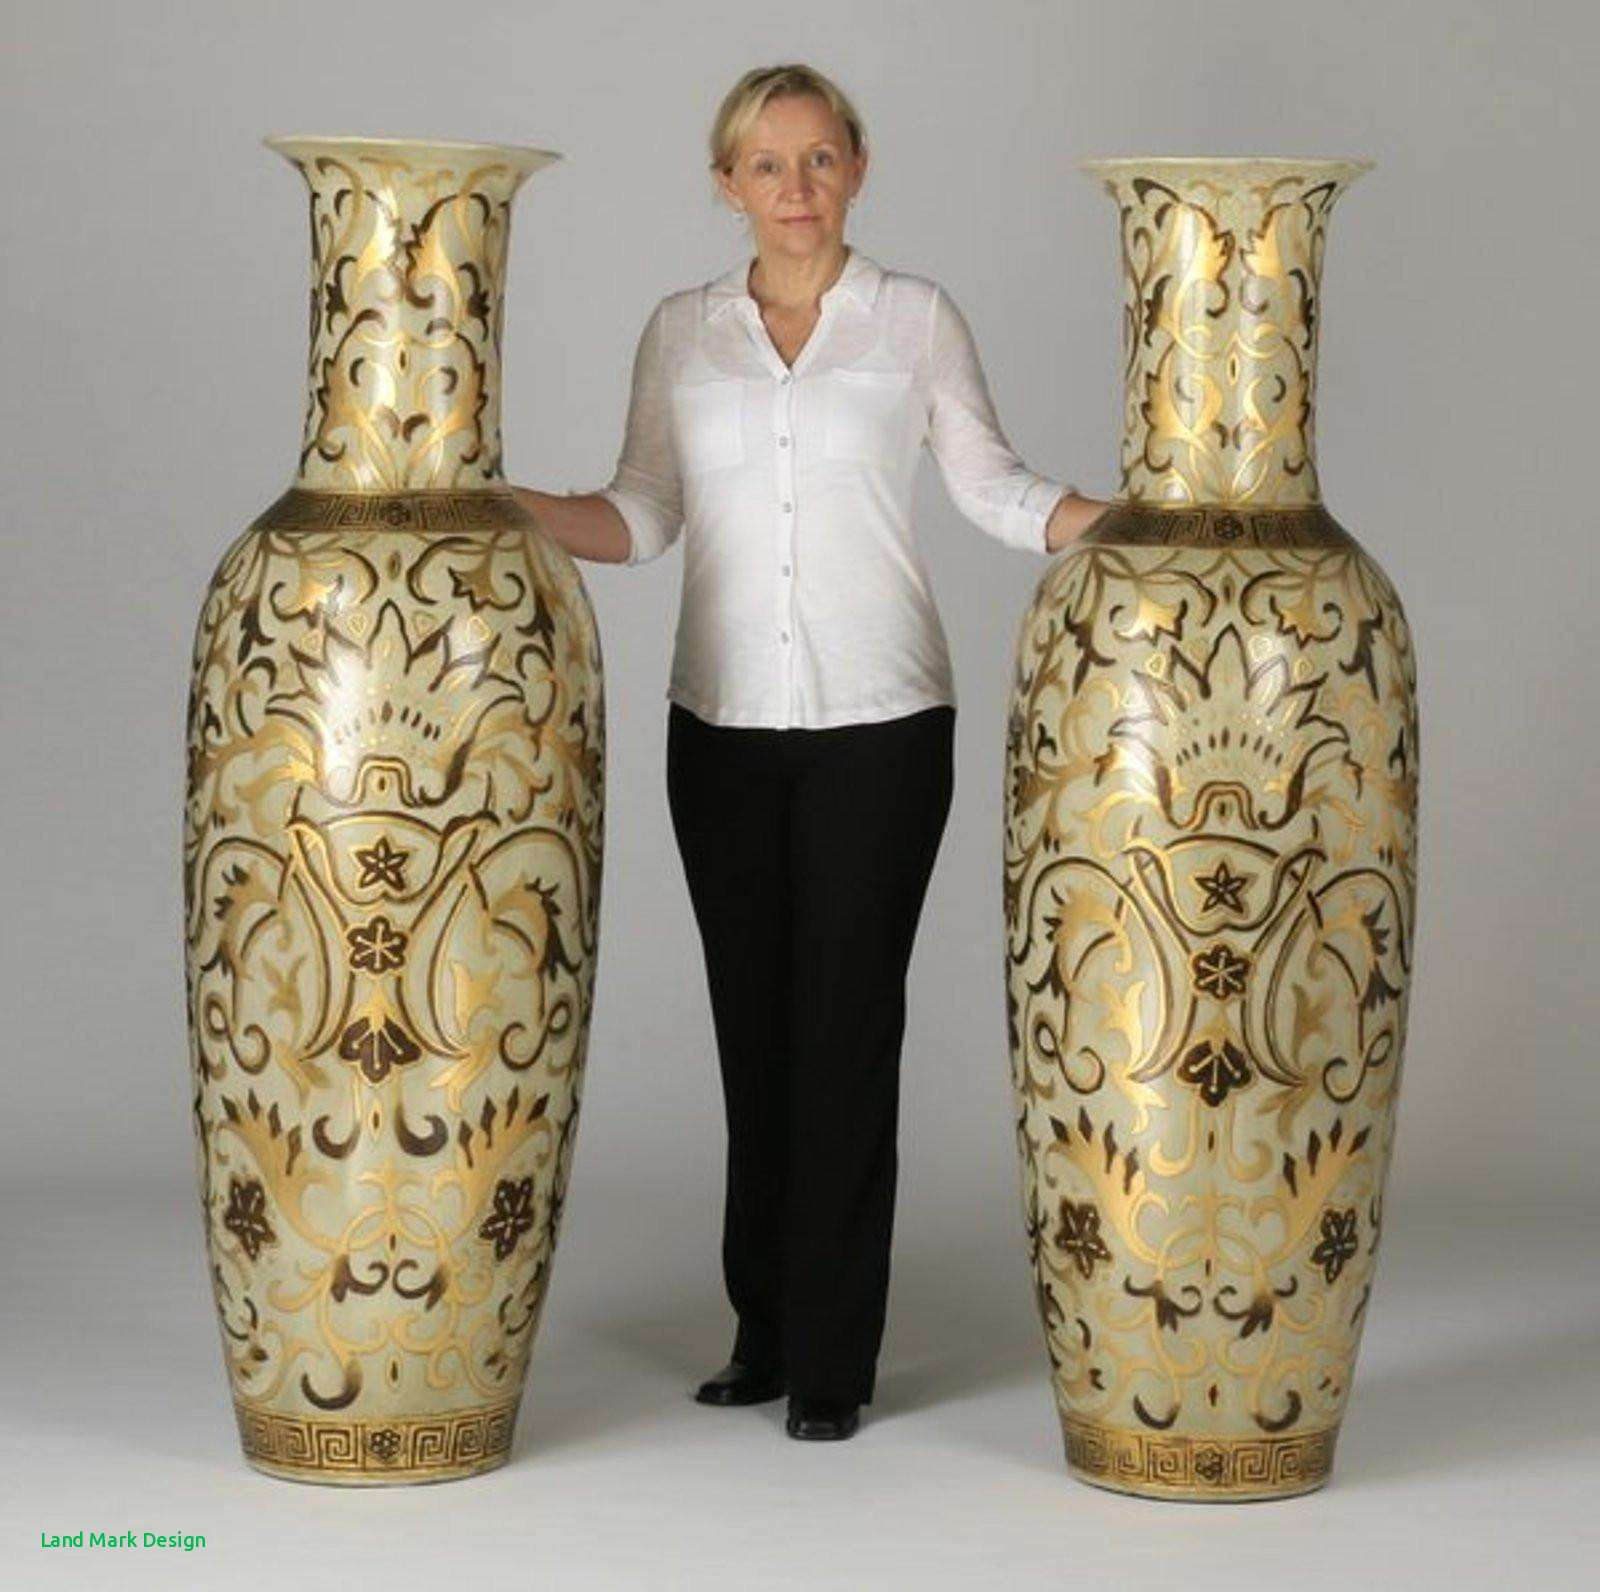 Dark Brown Floor Vase Of Oversized Floor Vases Home Design Inside Full Size Of Living Room White Floor Vase Luxury H Vases Oversized Floor I 0d Large